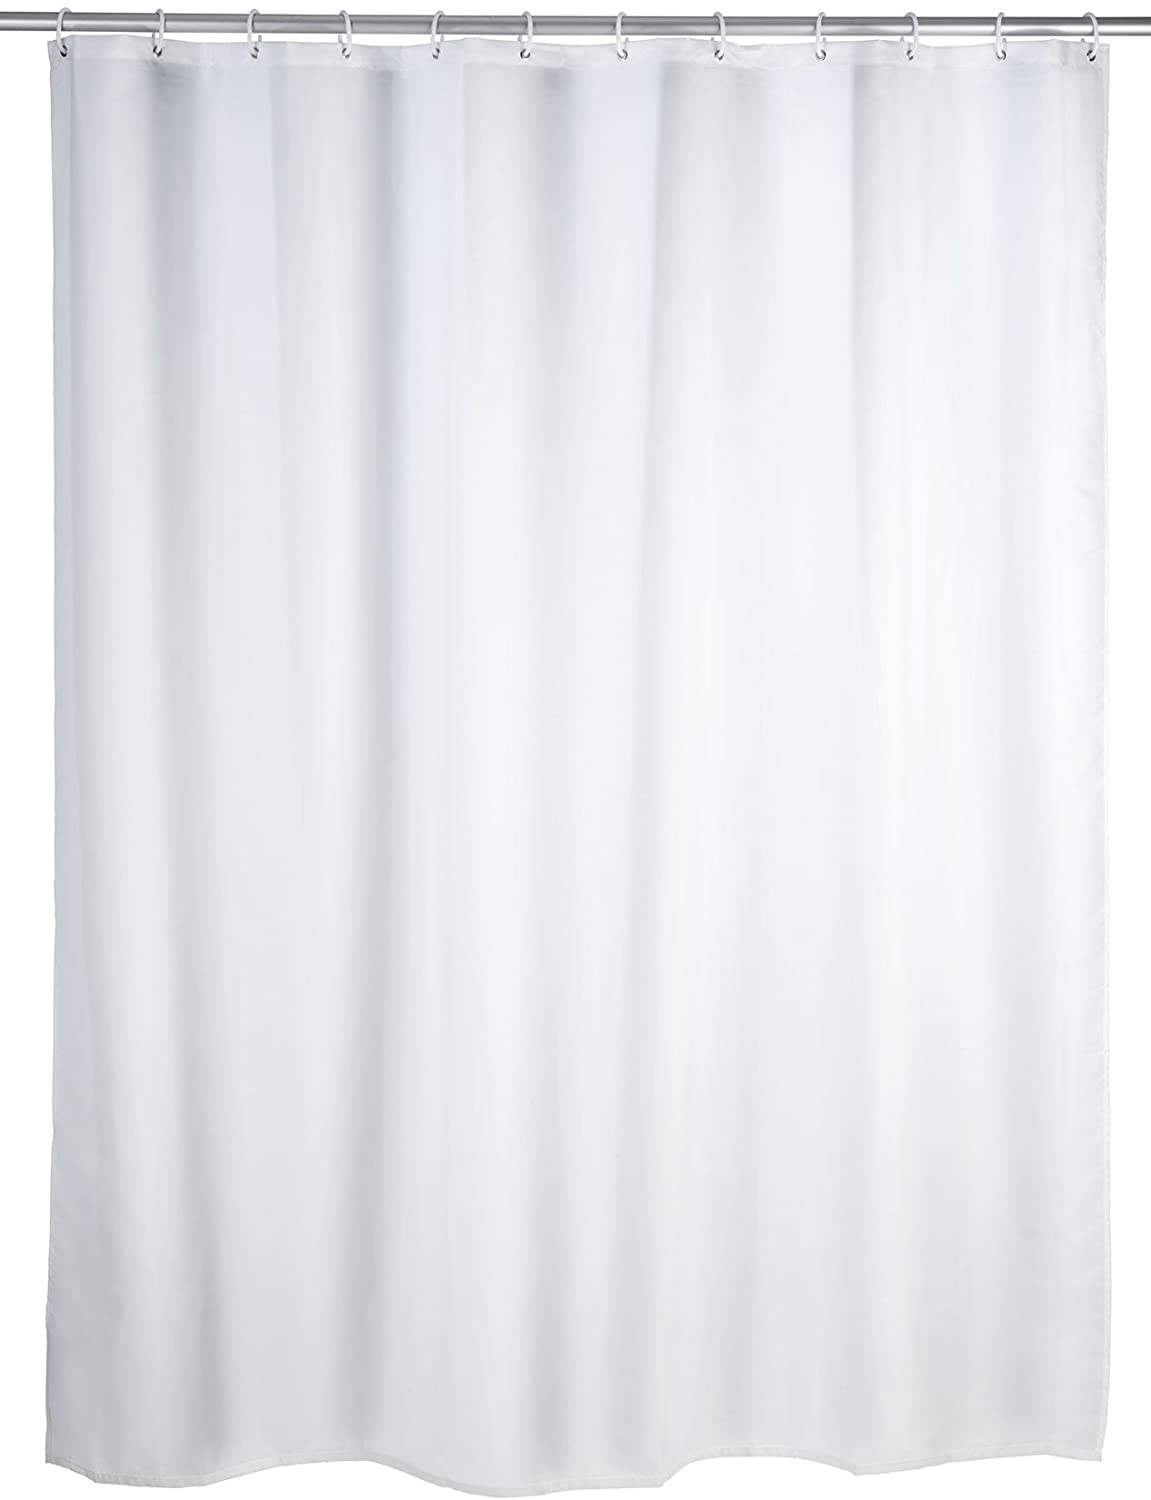 Anti-Schimmel Duschvorhang Uni White - Anti-Bakteriell, Textil, waschbar, wasserabweisend, schimmelresistent, mit 12 Duschvorhangringen, Polyester, 180 x 200 cm, Weiß